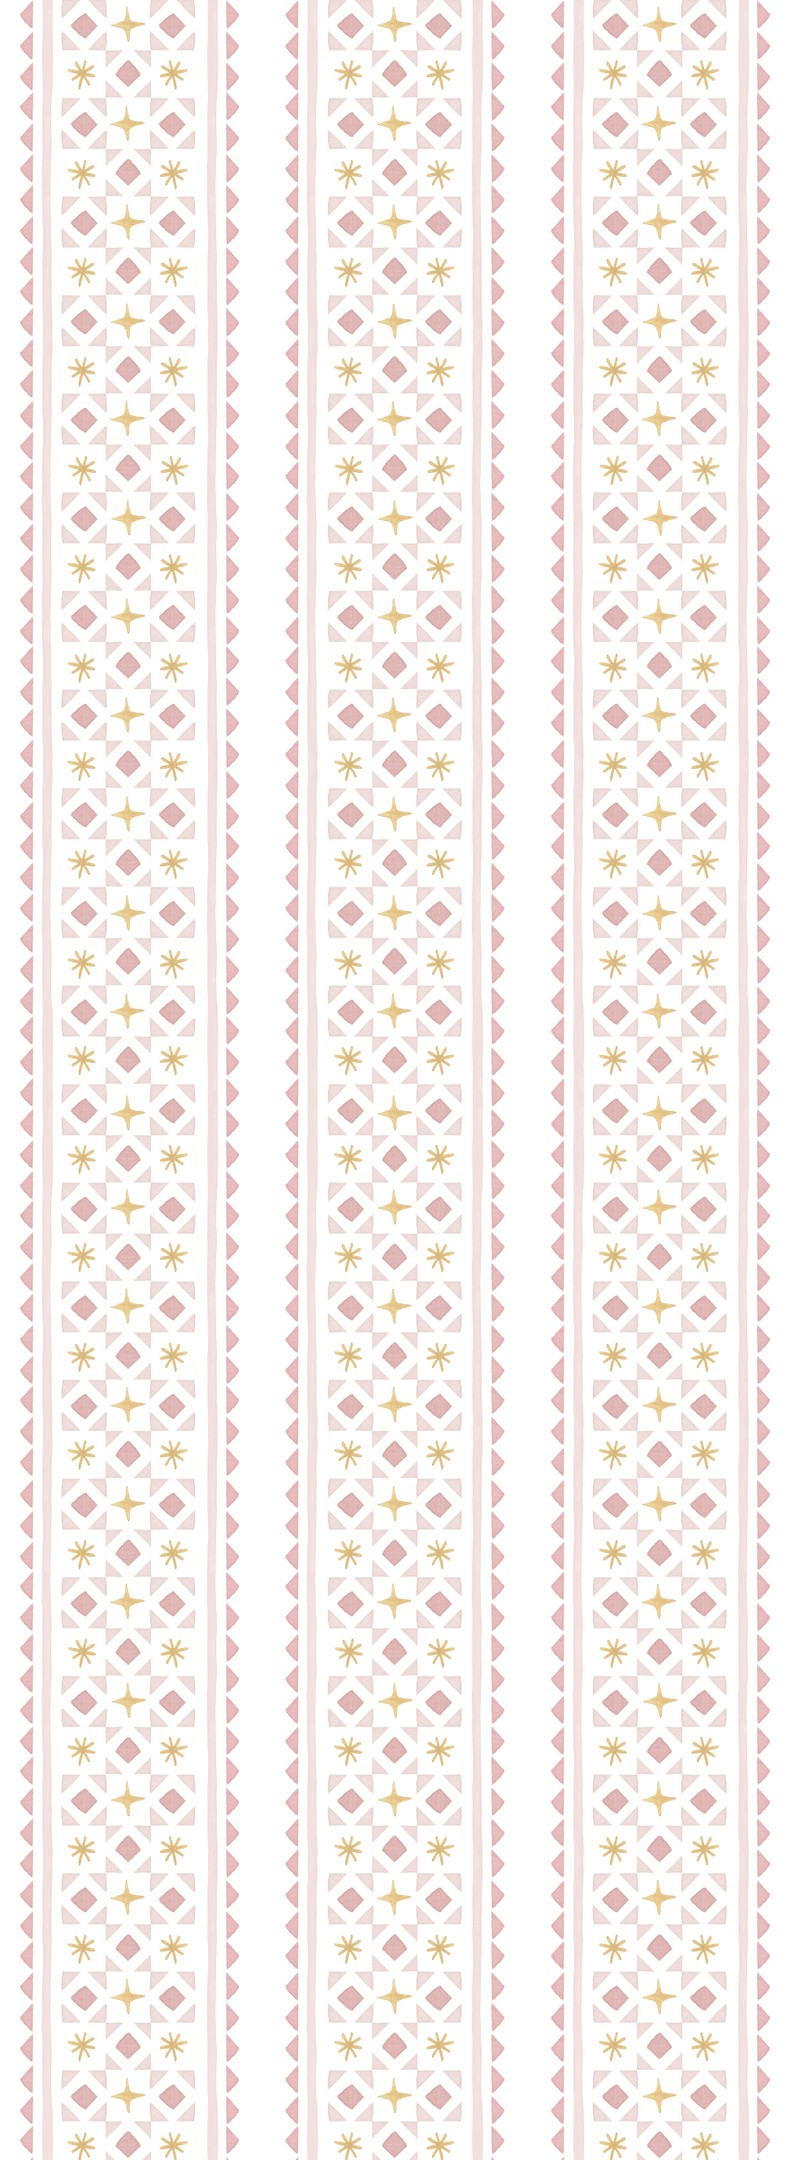 Papel de parede gravataria e asteriscos (rosa e amarelo) T.Design - 100% celulose